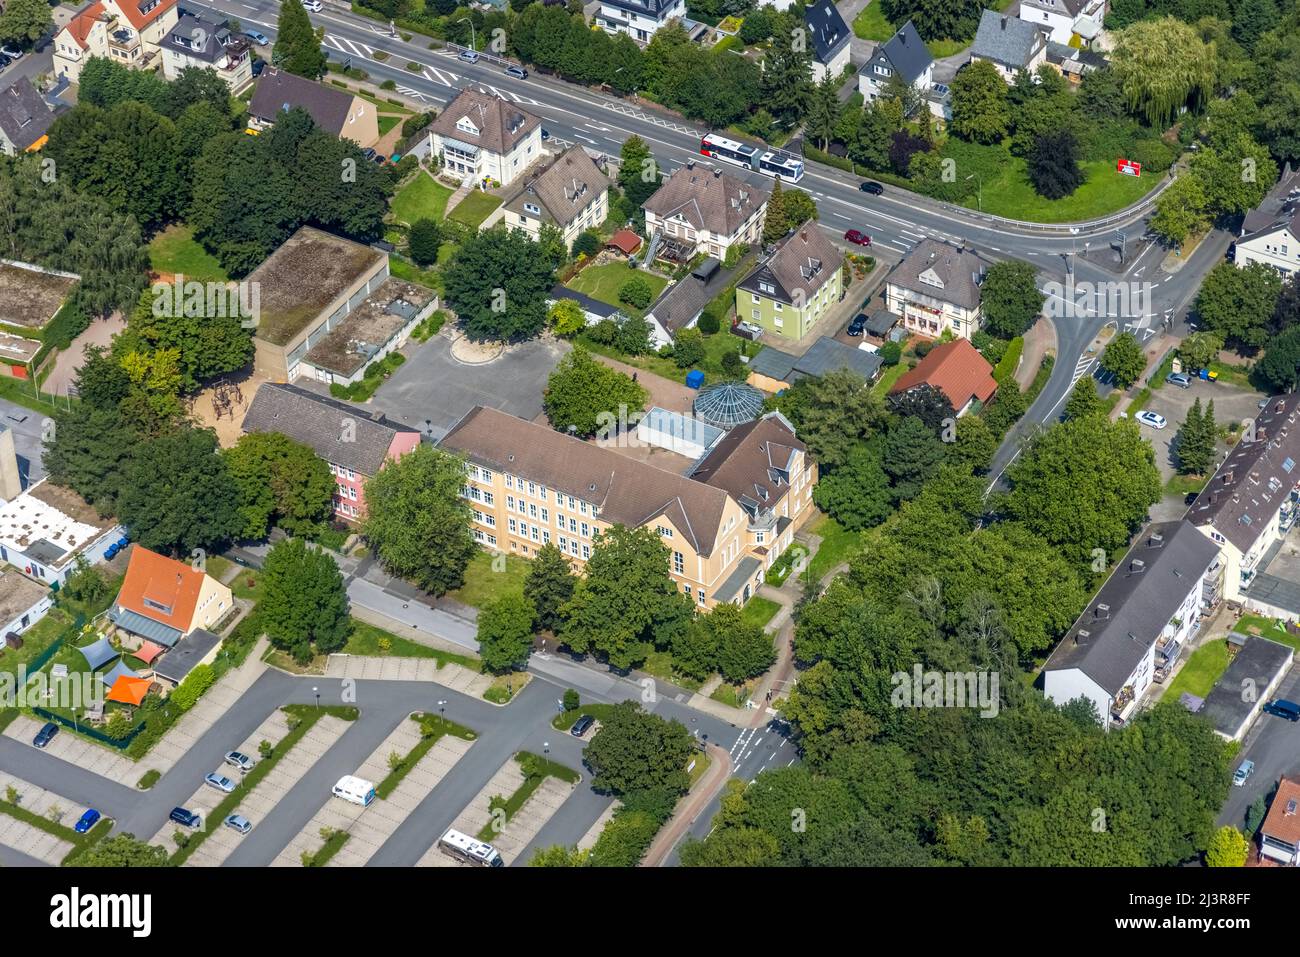 Vista aérea, escuela Diesterweg en el distrito de Kolonie Tannenberg, Kamen, área de Ruhr, Renania del Norte-Westfalia, Alemania, Luftbild, Diesterwegschule im Foto de stock